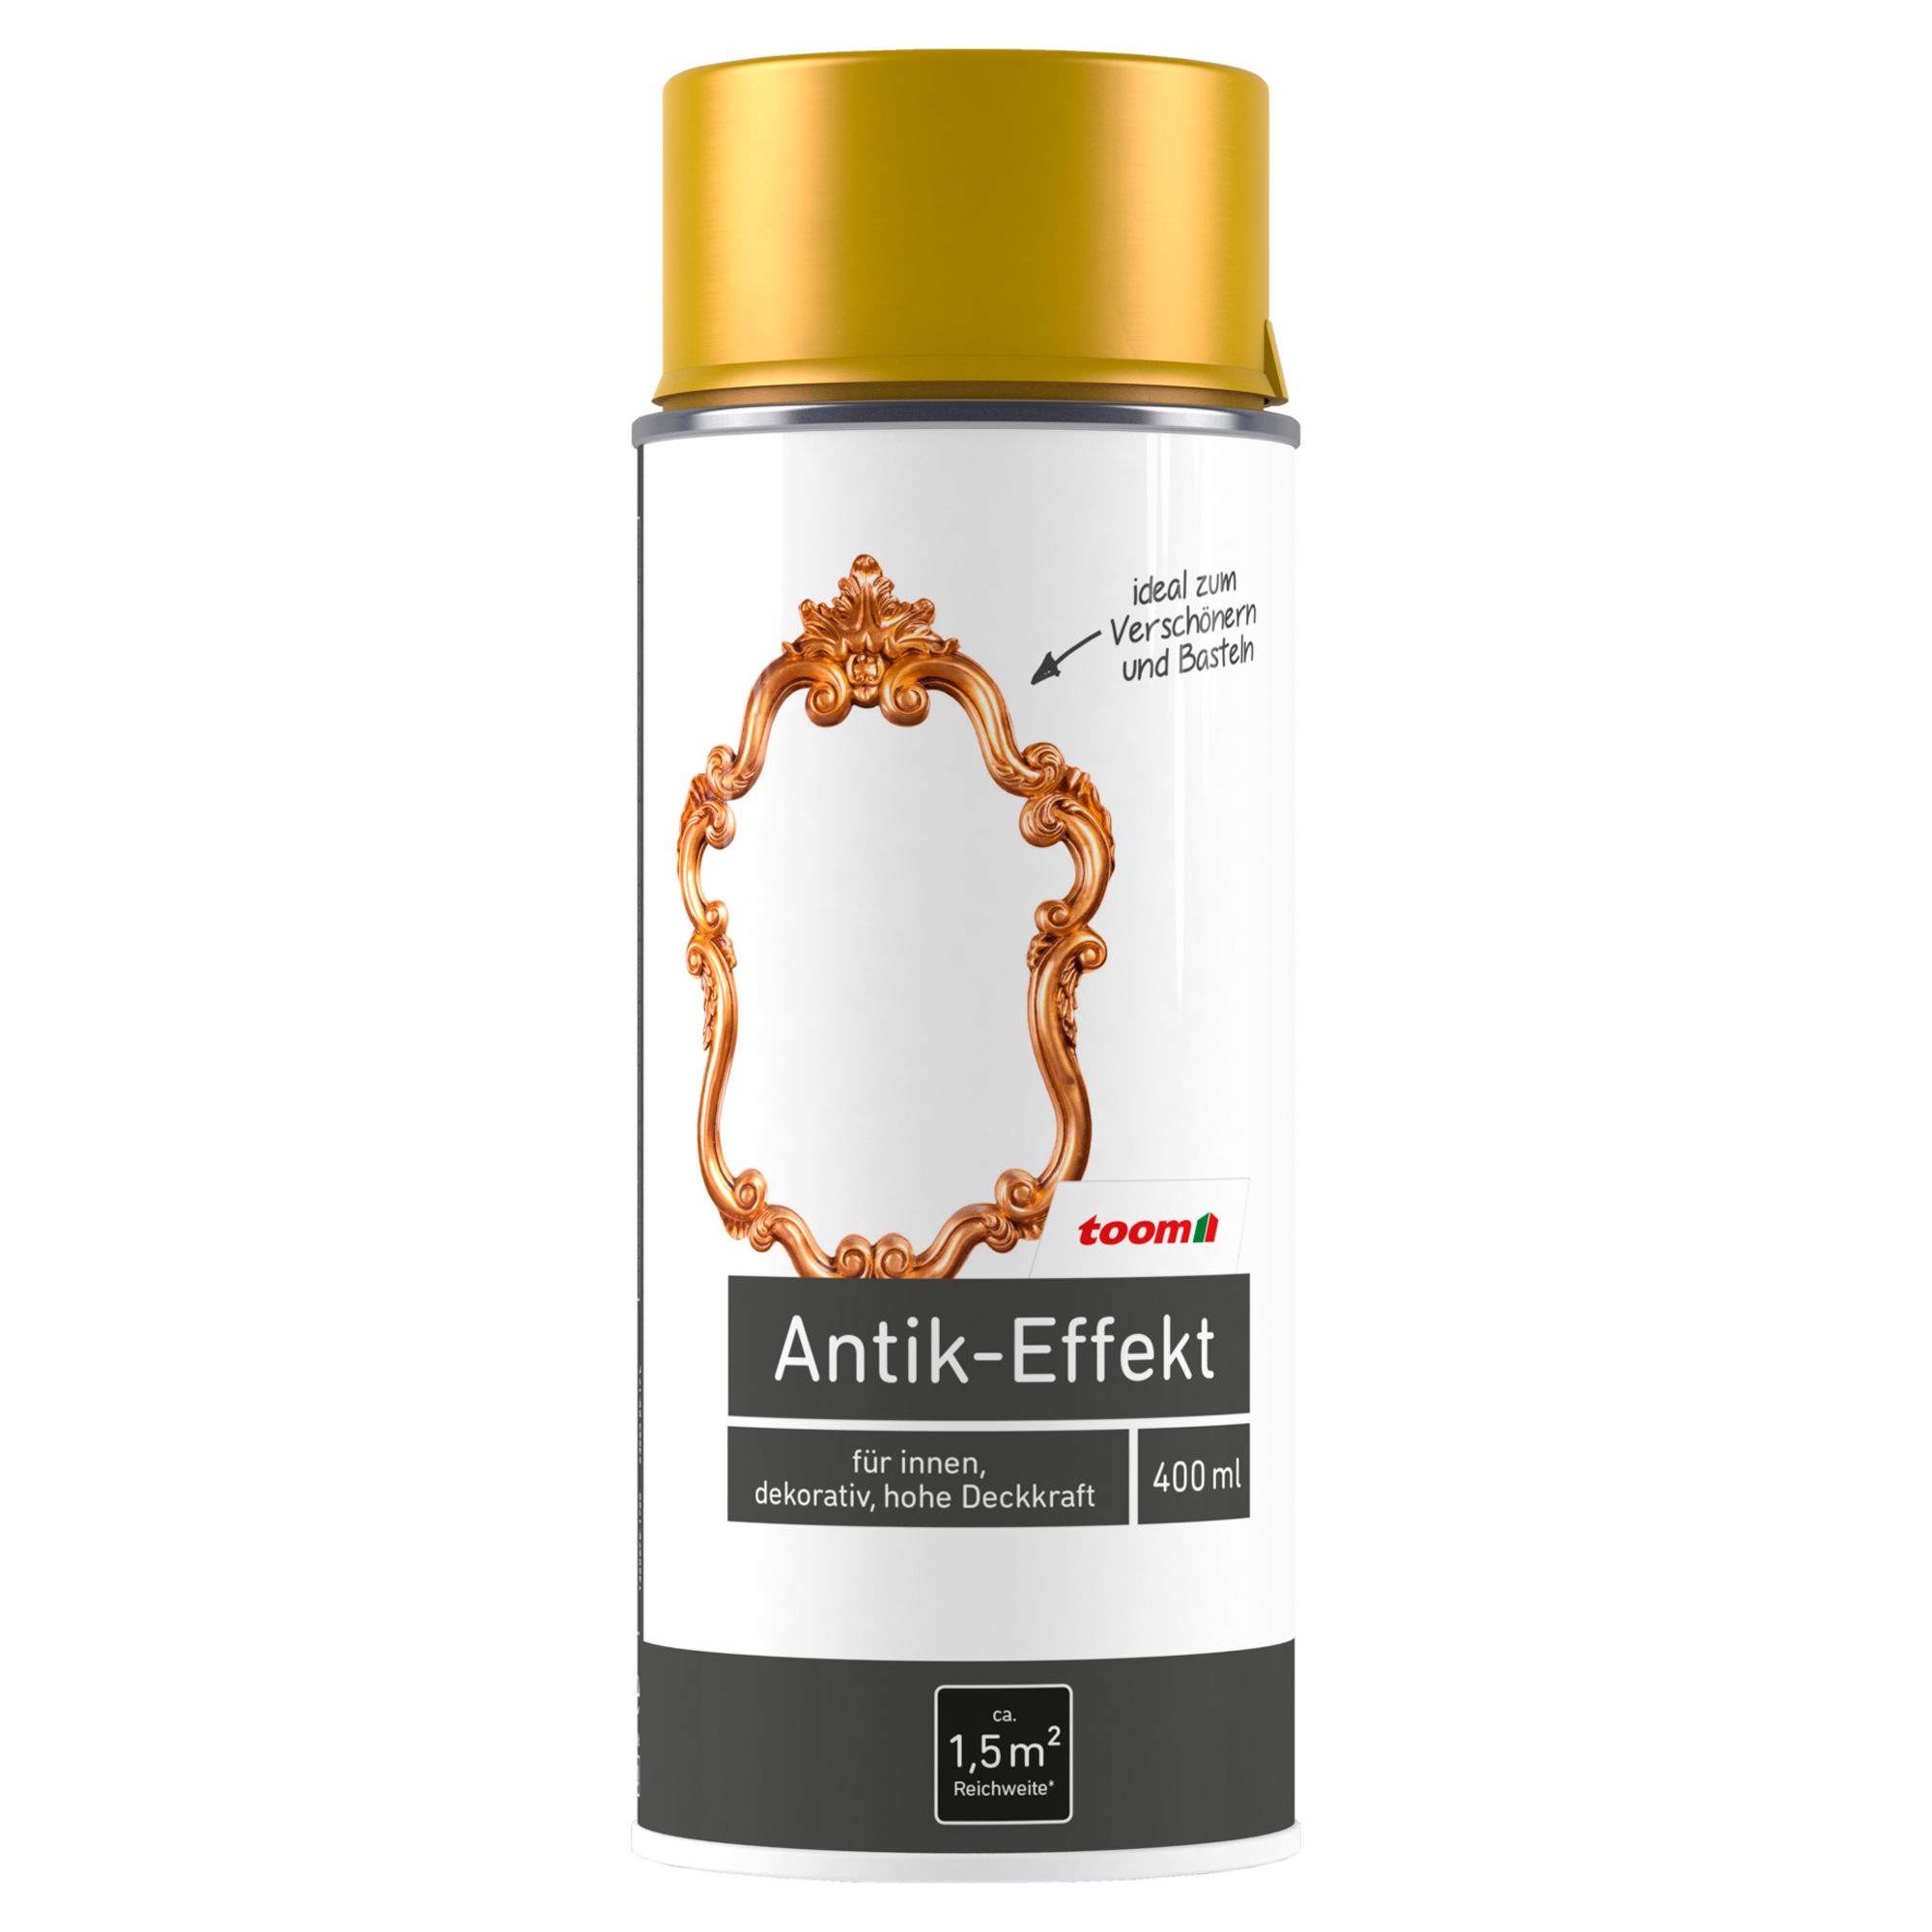 Antik-Effekt-Sprühlack gold glänzend 400 ml + product picture